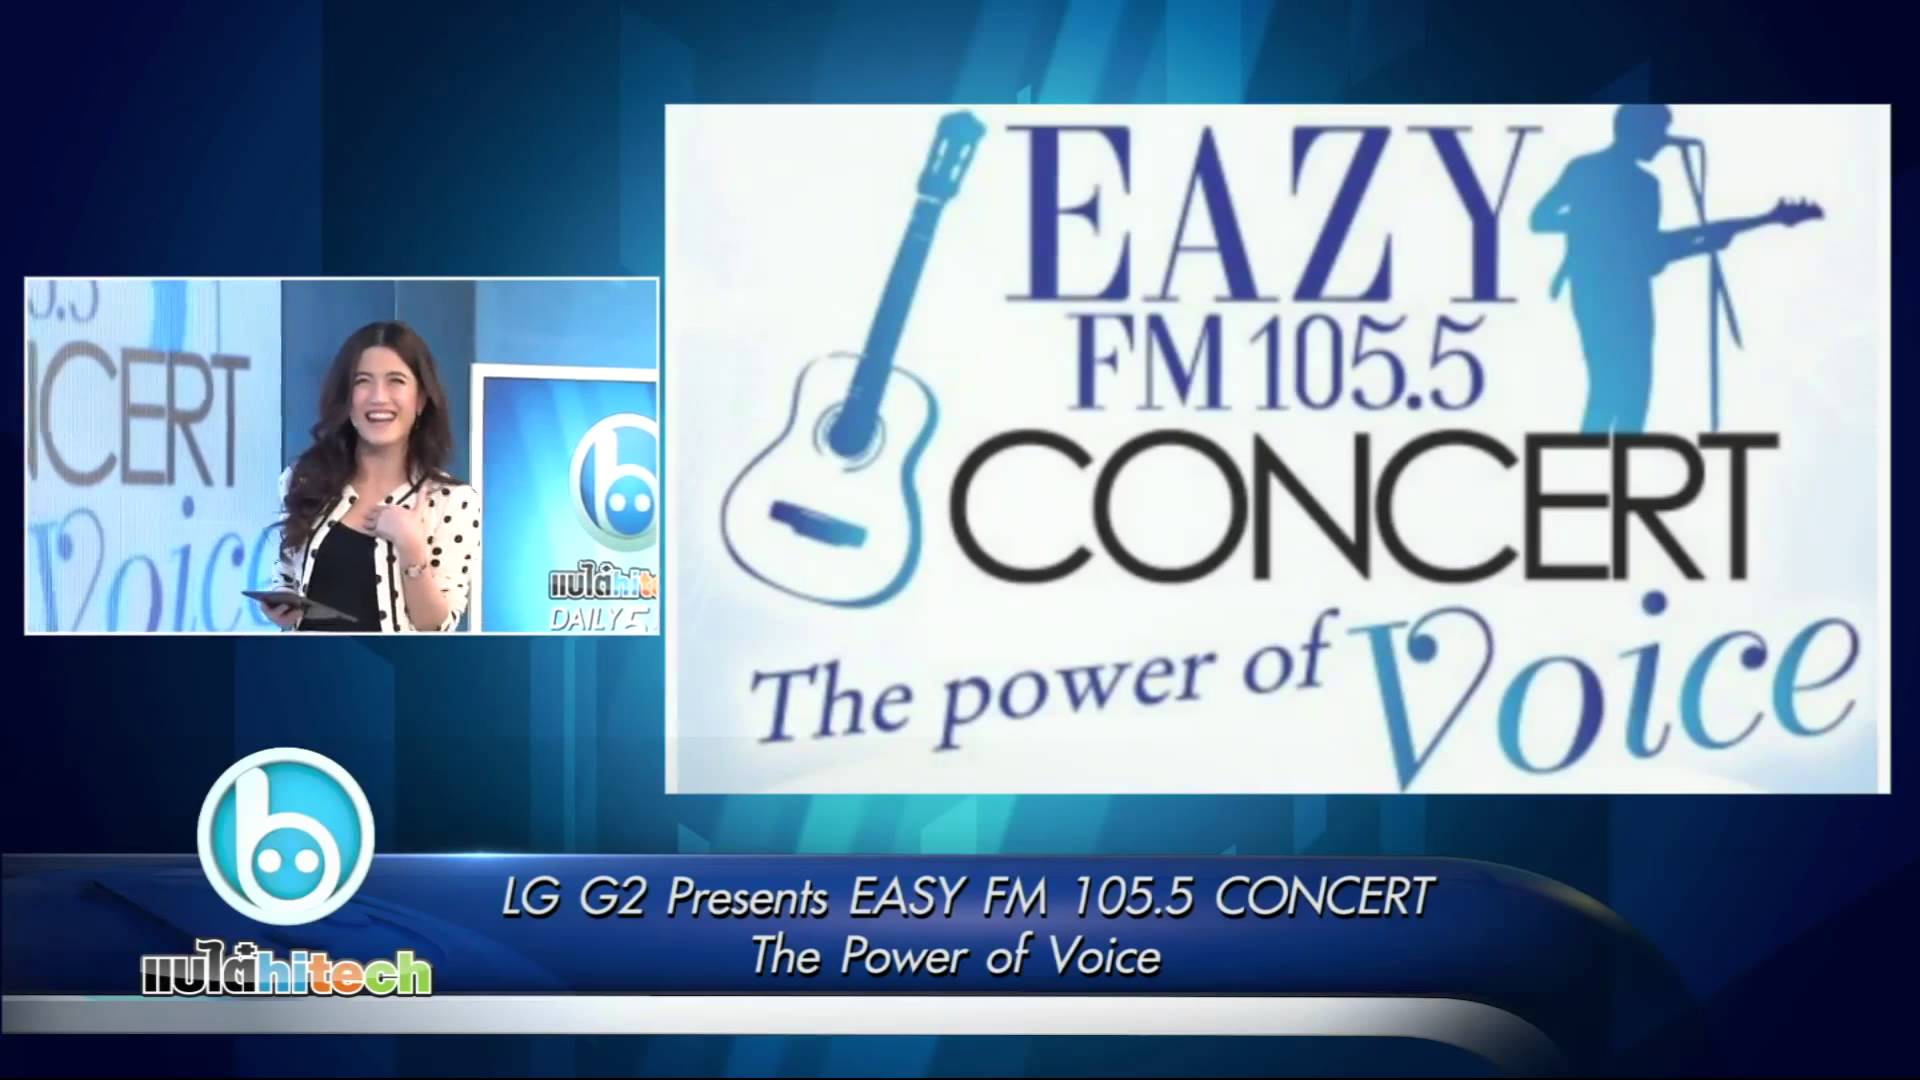 (ประชาสัมพันธ์)  LG ชวนมันในคอนเสิร์ต LG G2 Presents EASY FM 105.5 CONCERT The power of Voice